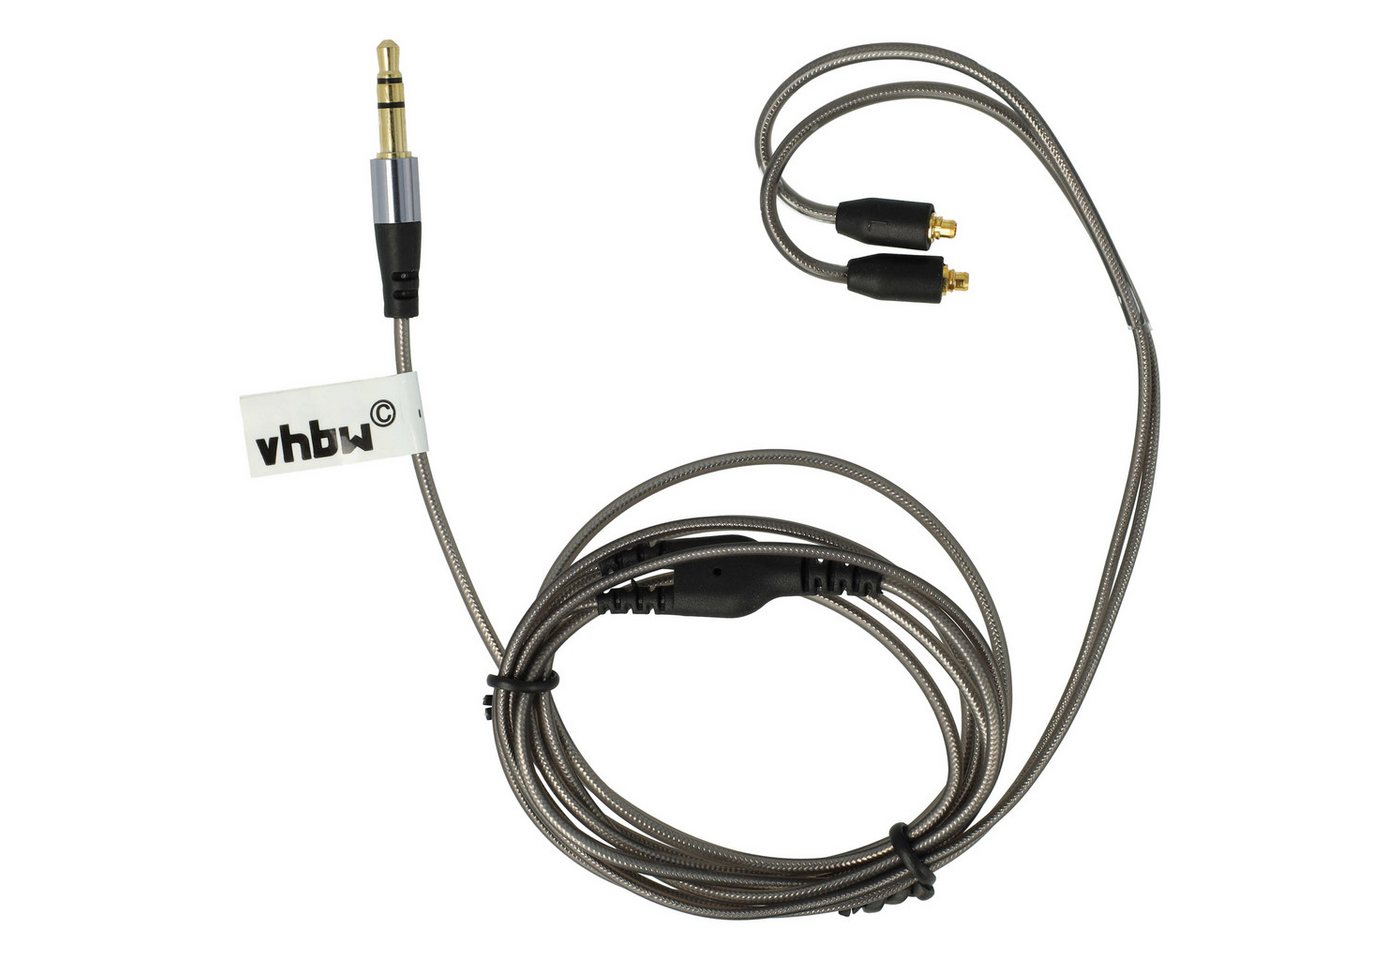 vhbw passend für Sony HA-FX850, XBA-A2, XBA-A3, XBA-H2, XBA-H3, XBA-Z5 Kopfhörer Audio-Kabel, passend für Sony HA-FX850, XBA-A2, XBA-A3, XBA-H2, XBA-H3, XBA-Z5 Kopfhörer von vhbw